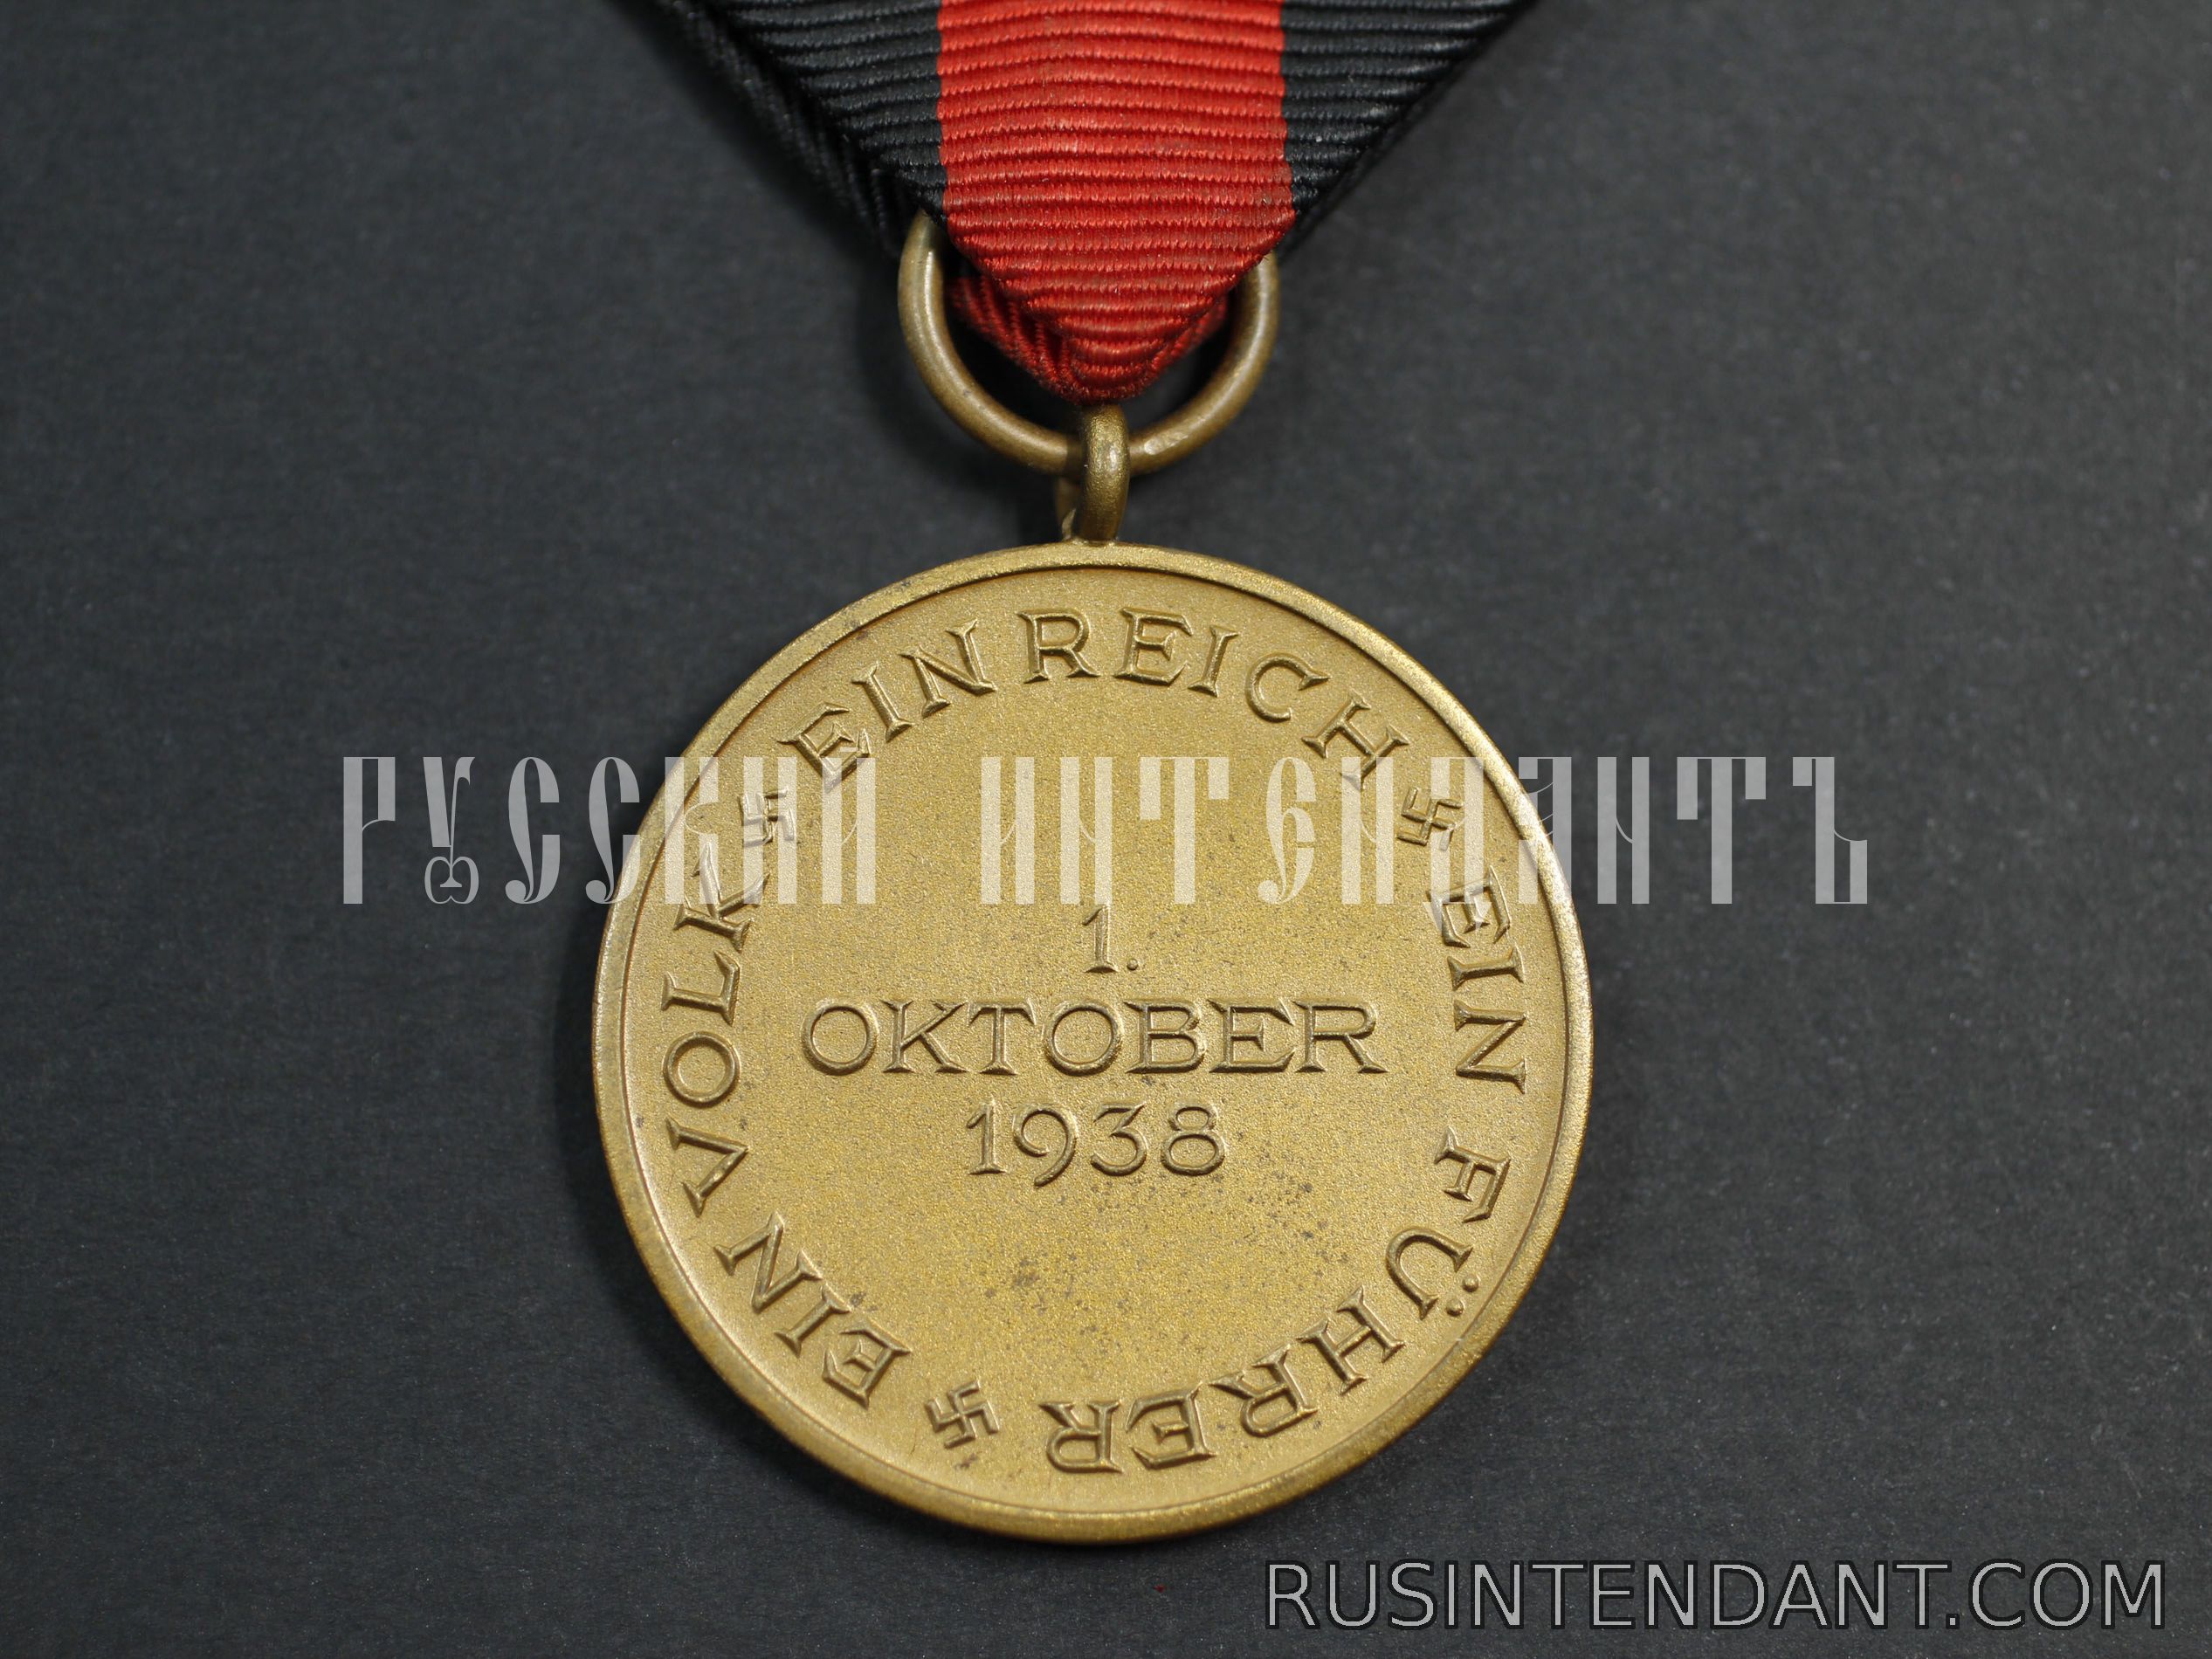 Фото 5: Медаль "В память 1 октября 1938 года" со шпангой 